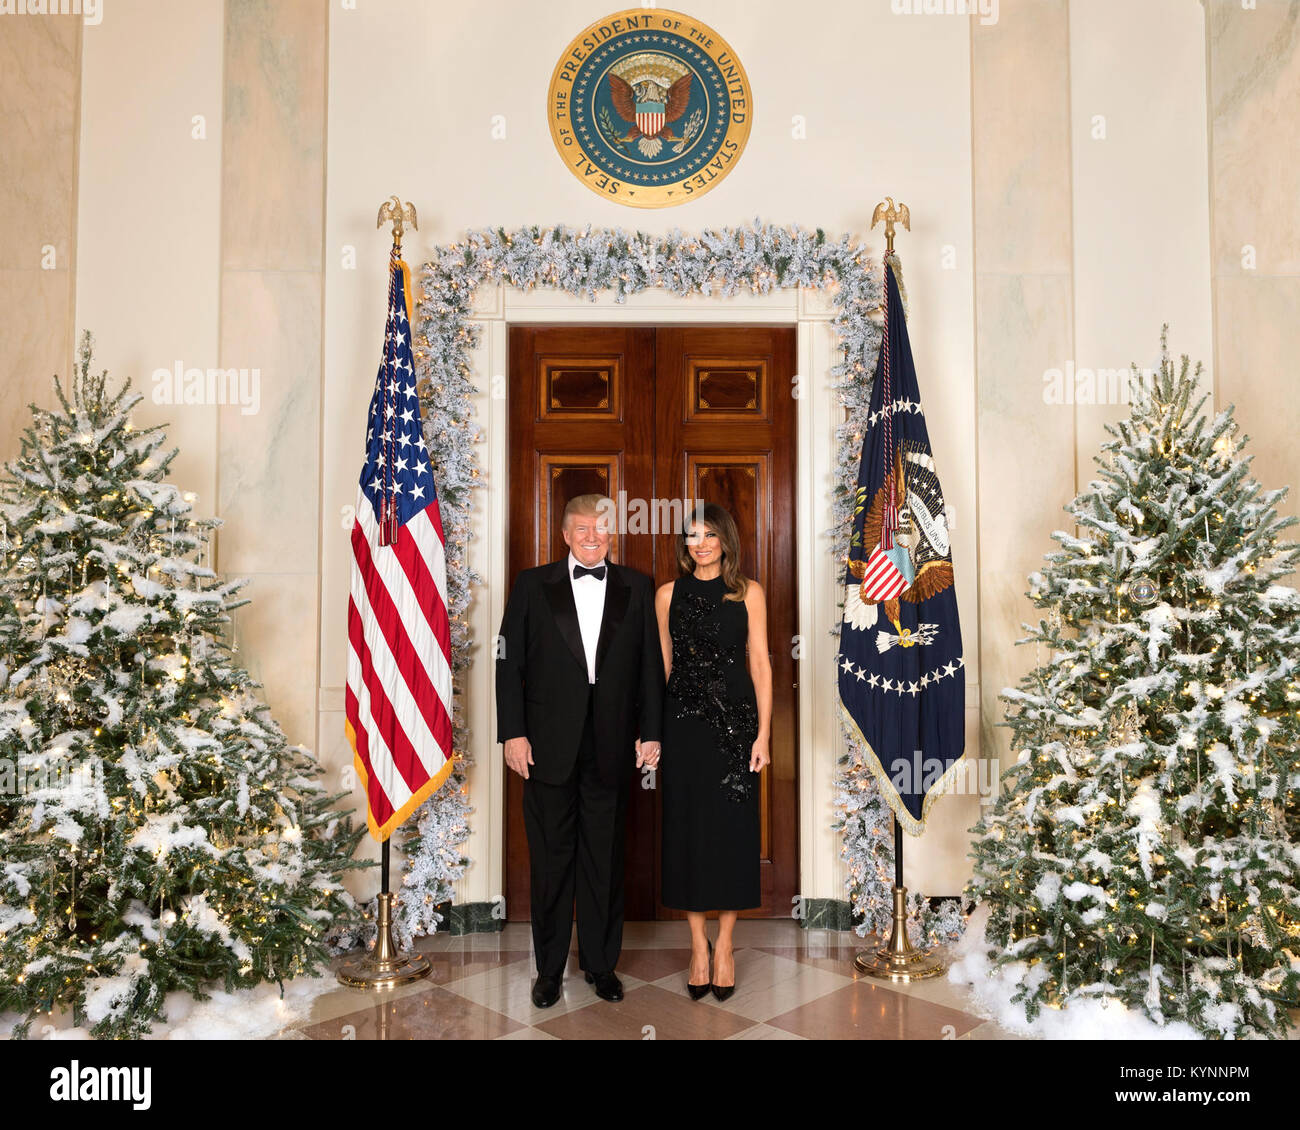 Le président Donald J. Trump et la Première Dame Melania Trump 2017 portrait officiel de Noël | Décembre 5, 2017 (Photo Officiel de la Maison Blanche par Andrea Hanks) Photo du jour 15 Décembre 2017 o 39132688602 Banque D'Images